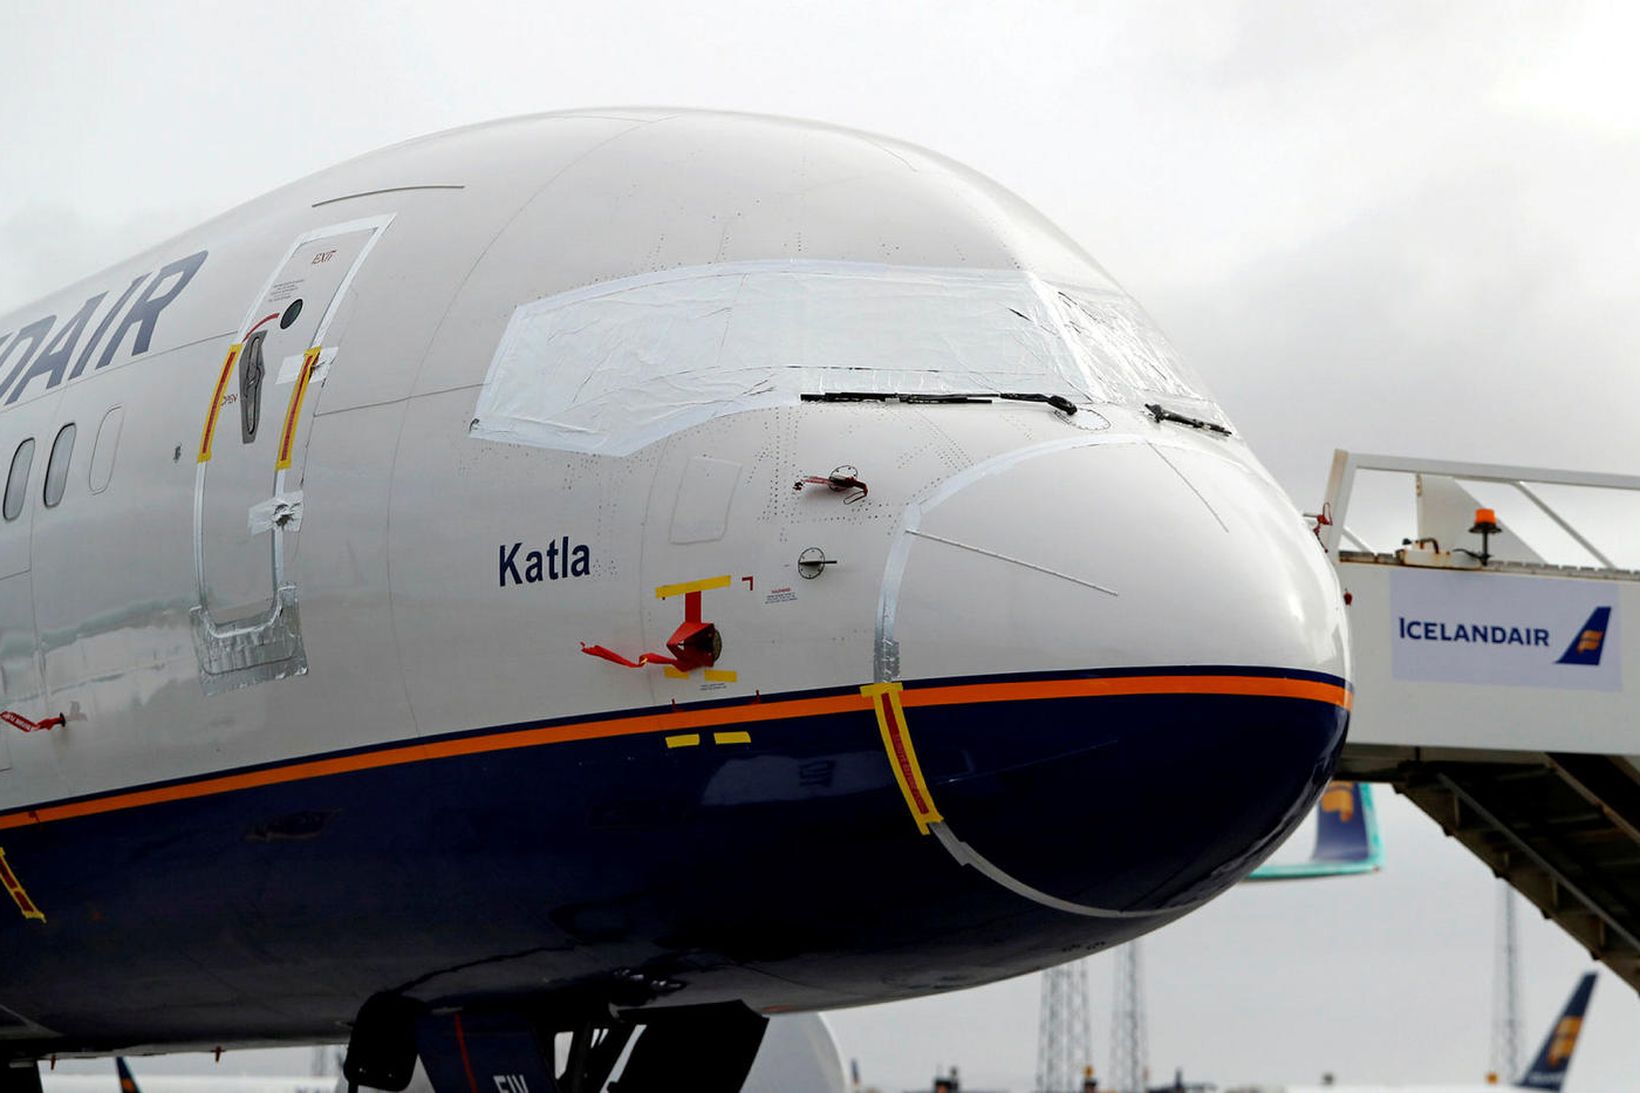 Keflavíkurflugvöllur Boeing 757-200-þota Icelandair, Katla, er ein margra sem nú …